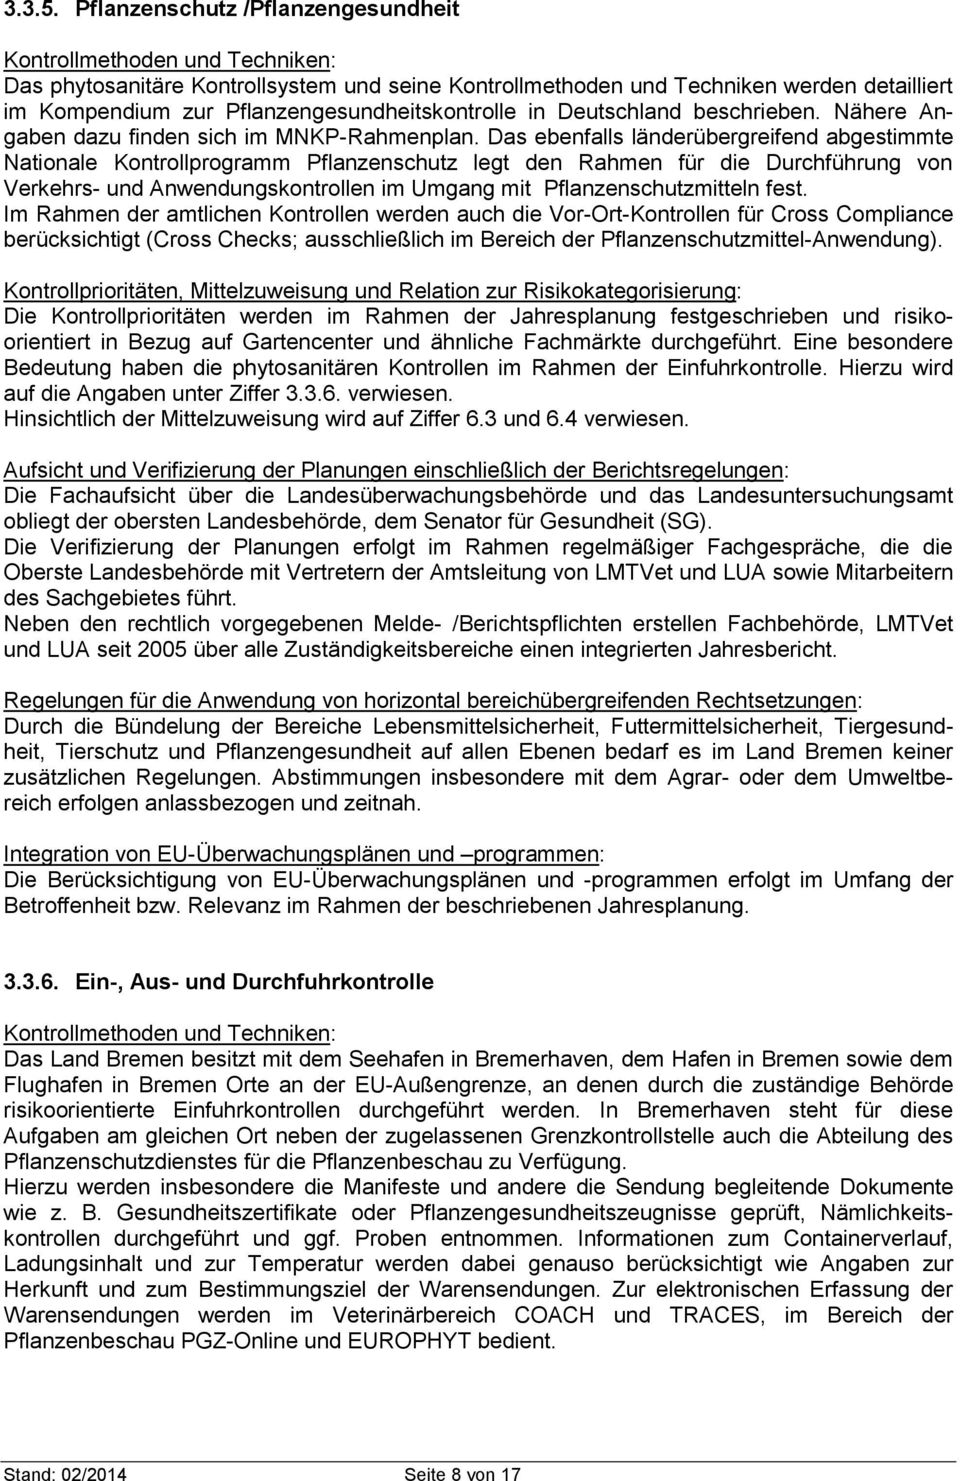 Pflanzengesundheitskontrolle in Deutschland beschrieben. Nähere Angaben dazu finden sich im MNKP-Rahmenplan.